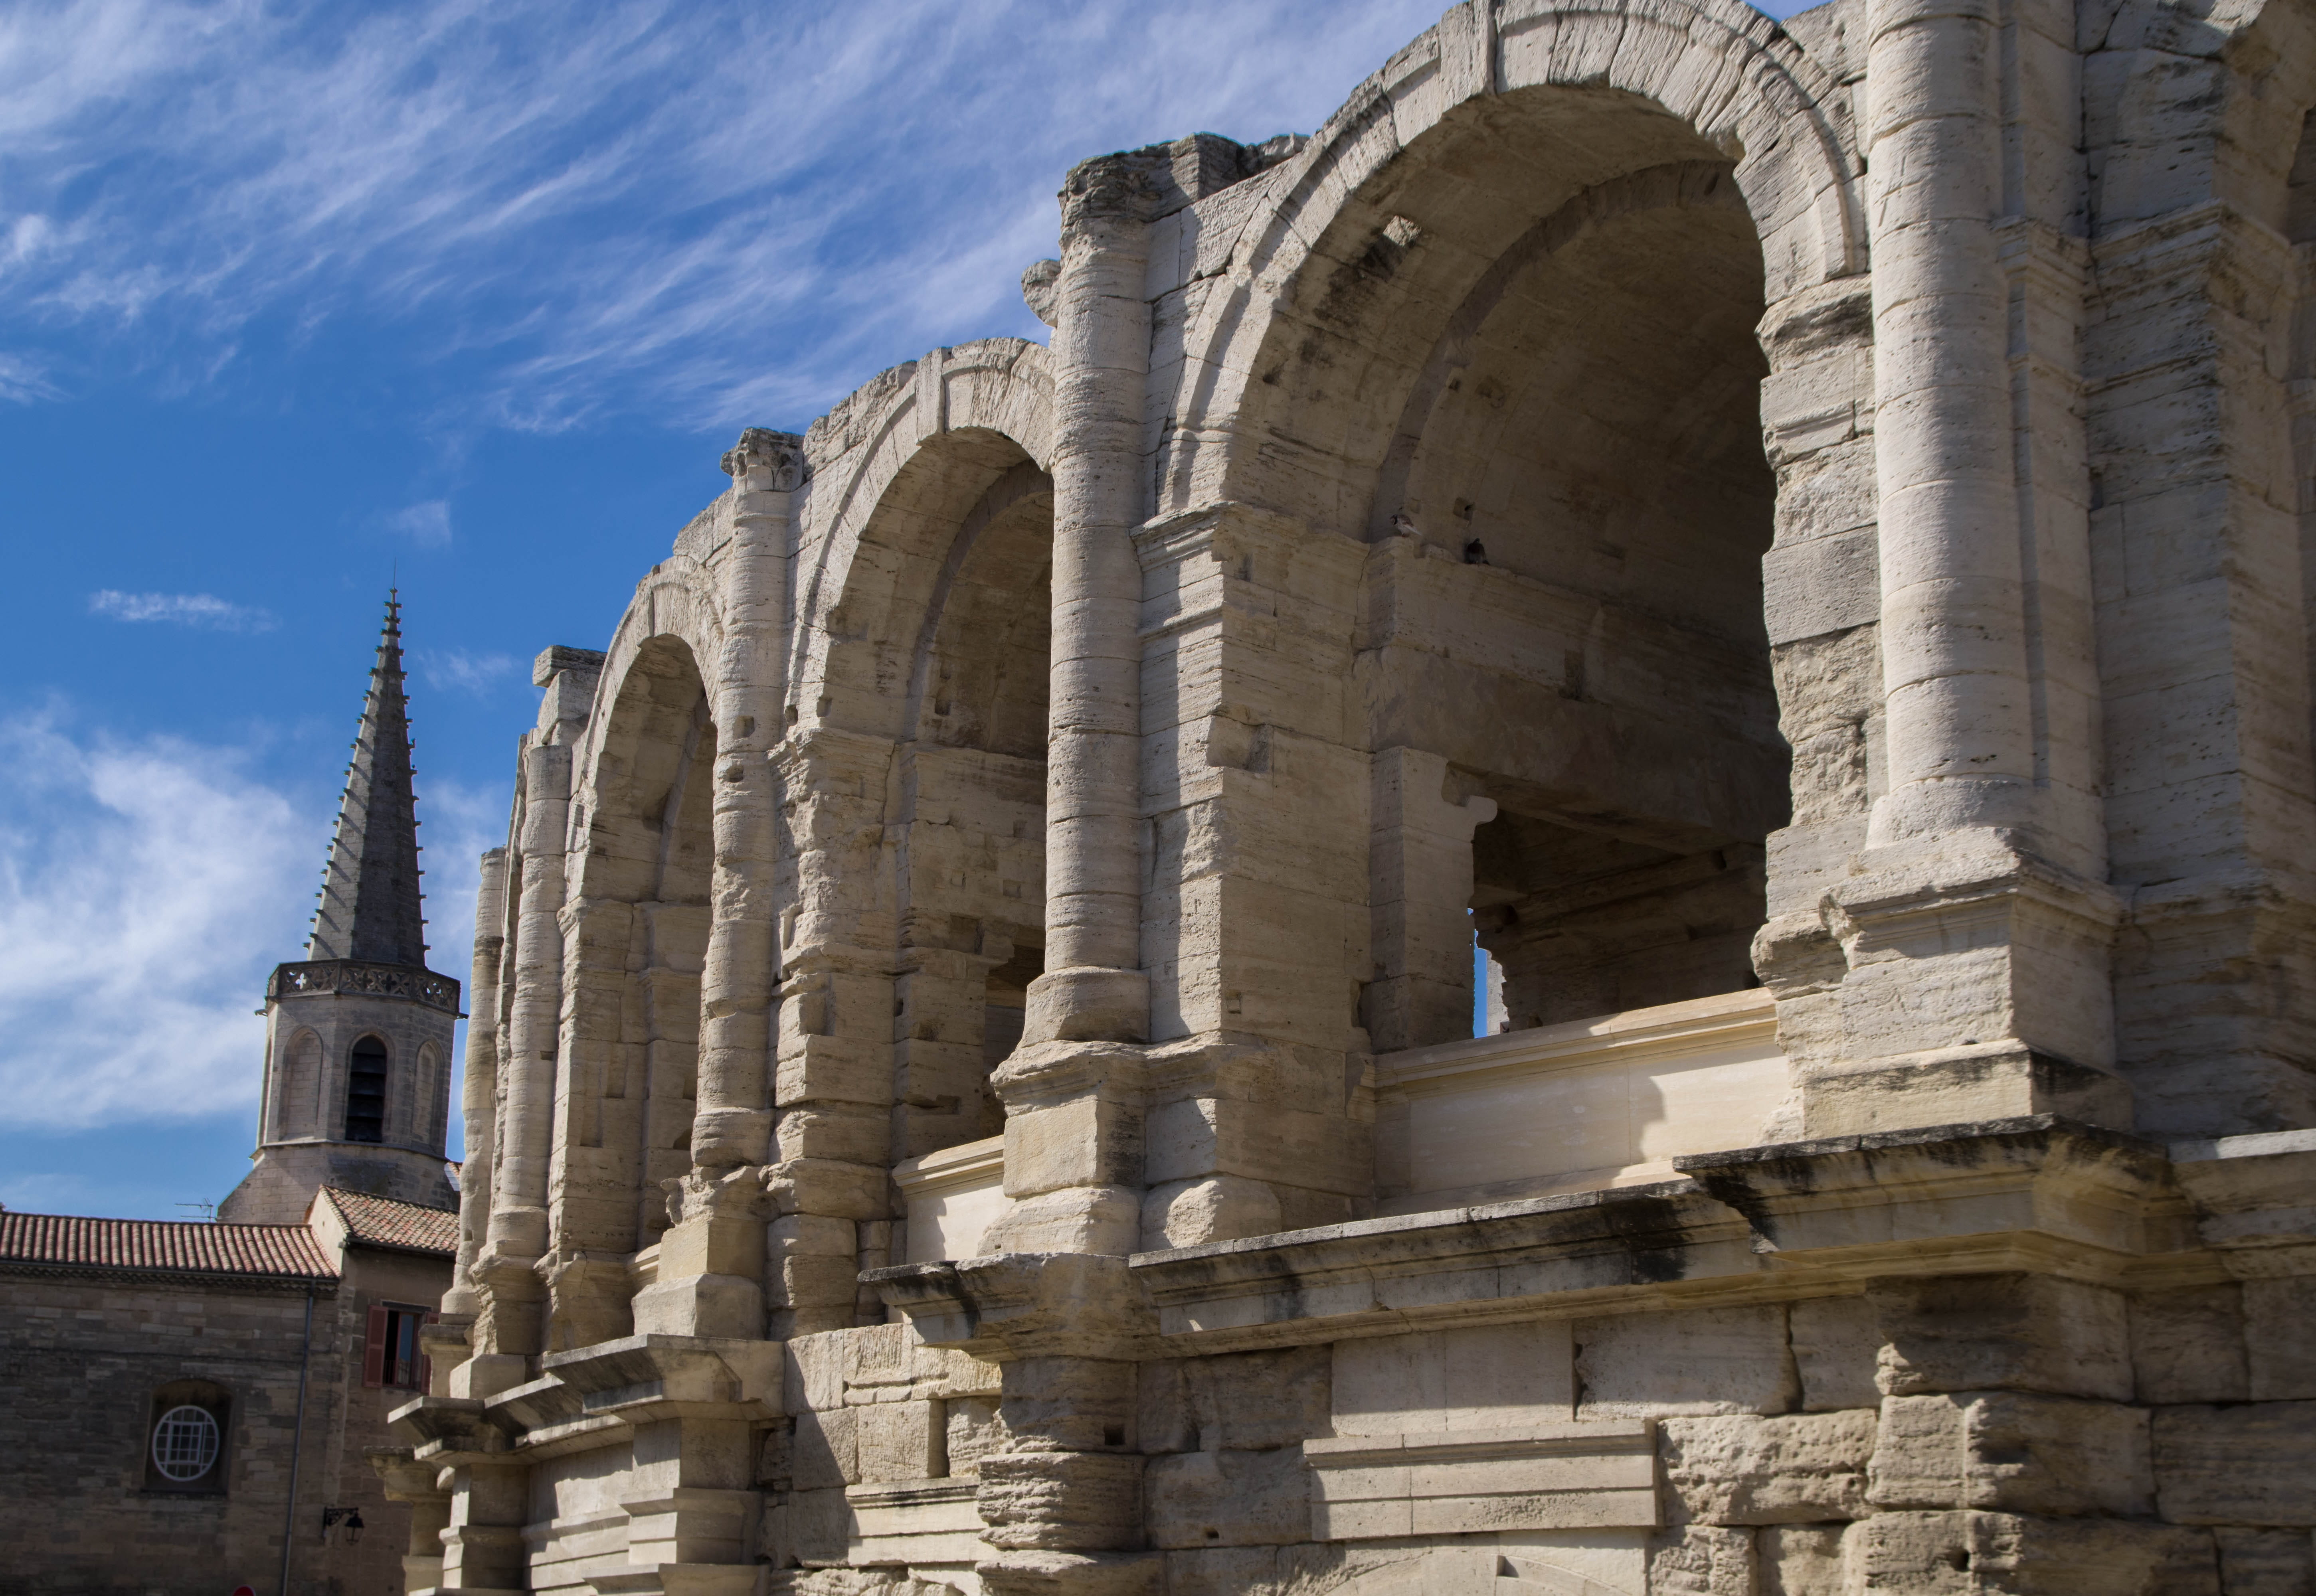 Arles roman amphitheater